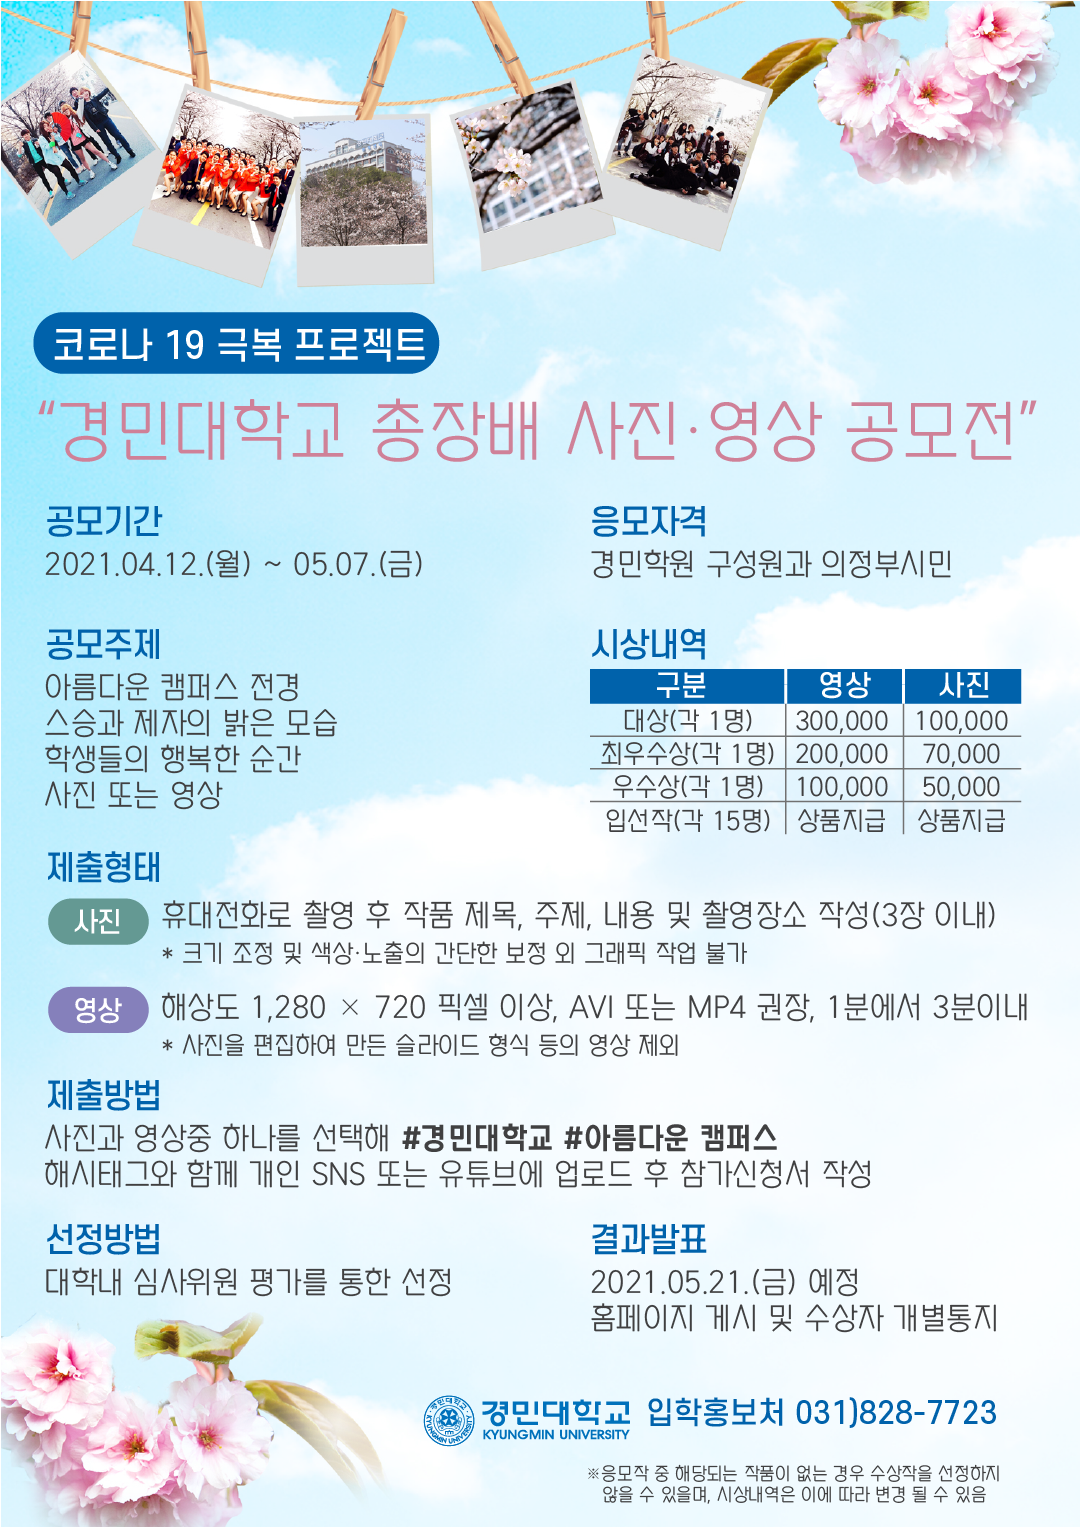 경민대학교, 코로나19 극복 프로젝트 ‘아름다운캠퍼스 사진/영상 공모전’ 개최  사진